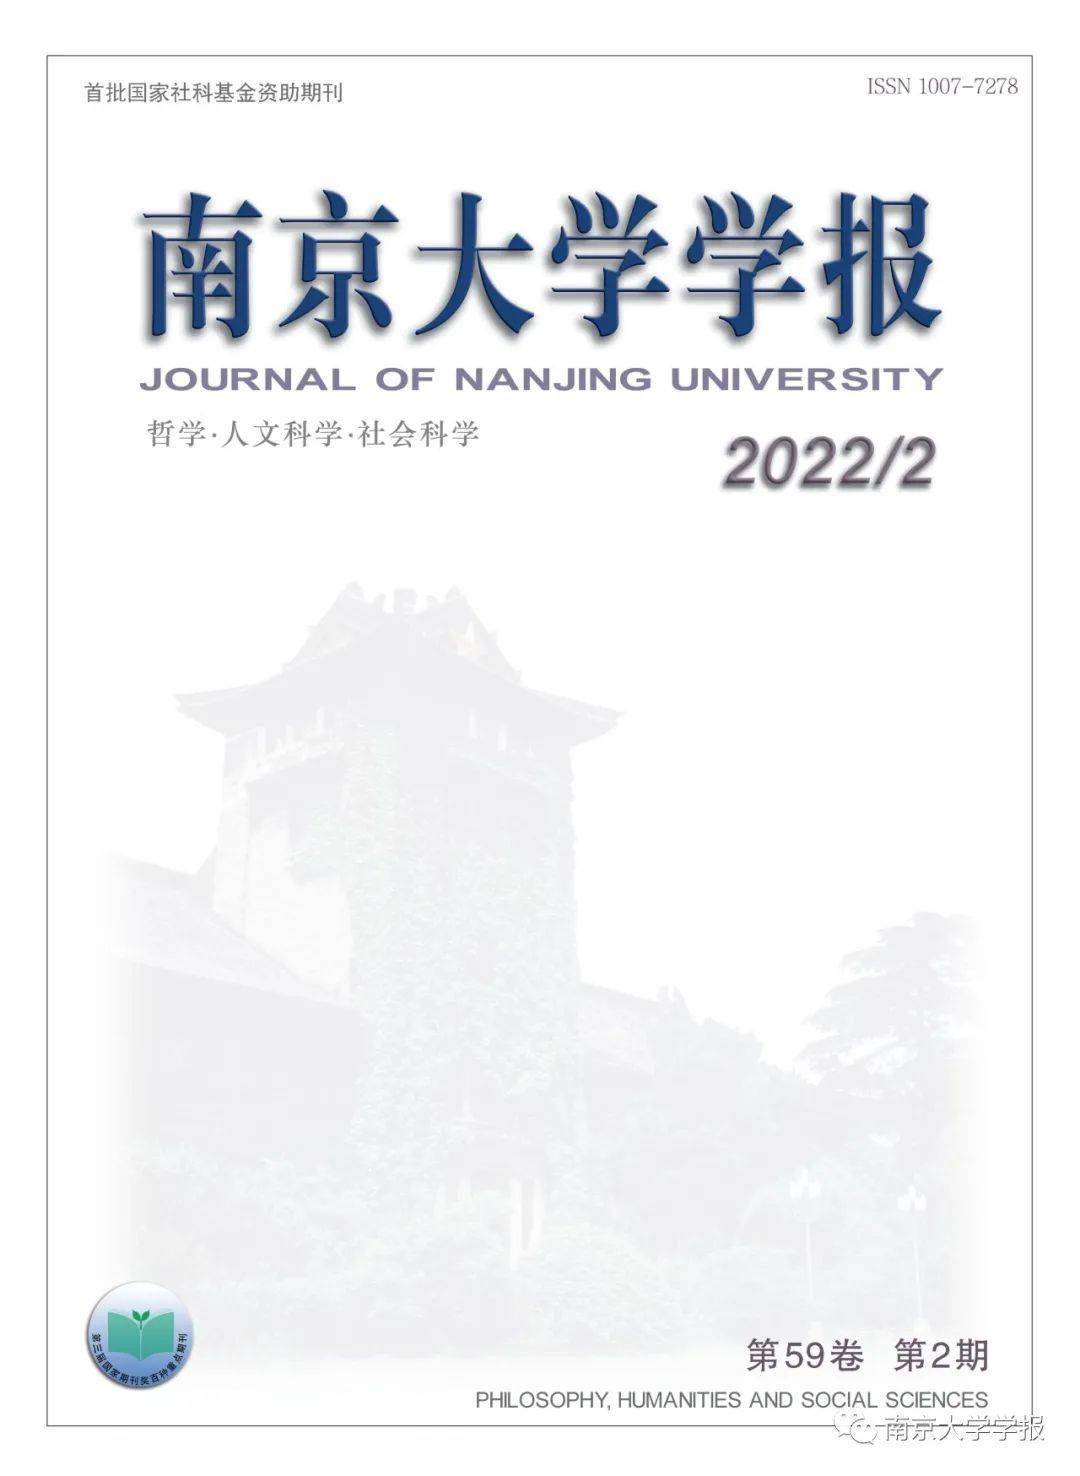 新刊南京大学学报哲学人文科学社会科学2022年第2期